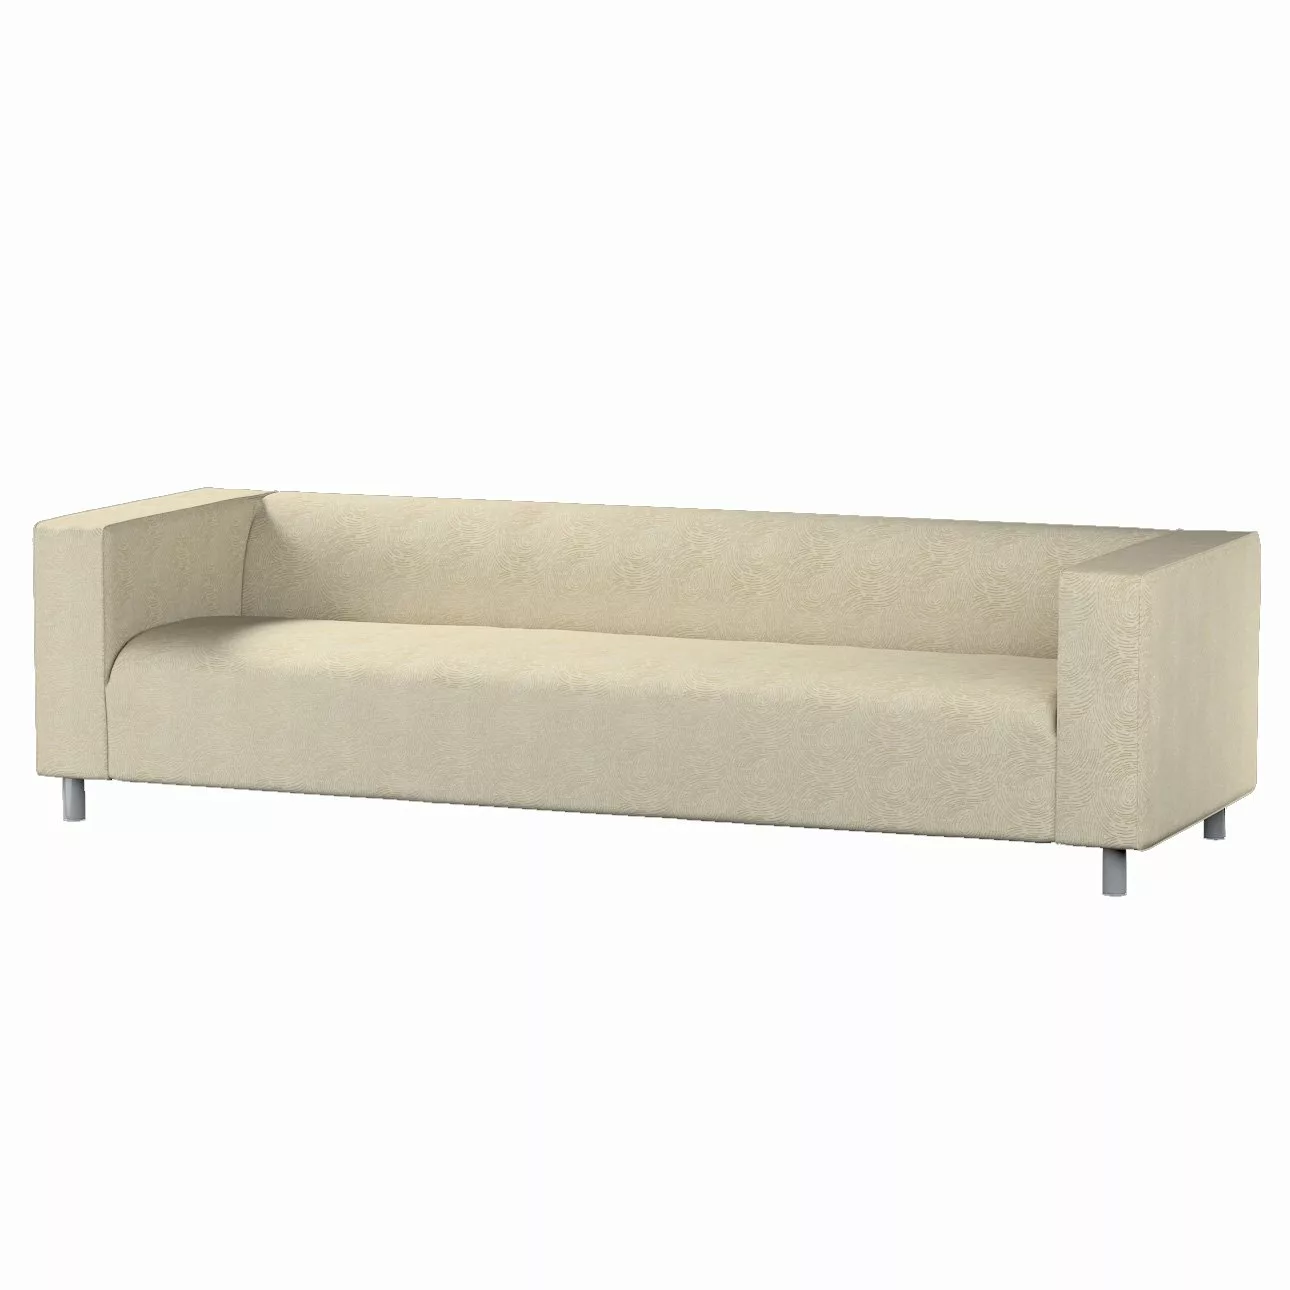 Bezug für Klippan 4-Sitzer Sofa, beige-golden, Bezug für Klippan 4-Sitzer, günstig online kaufen